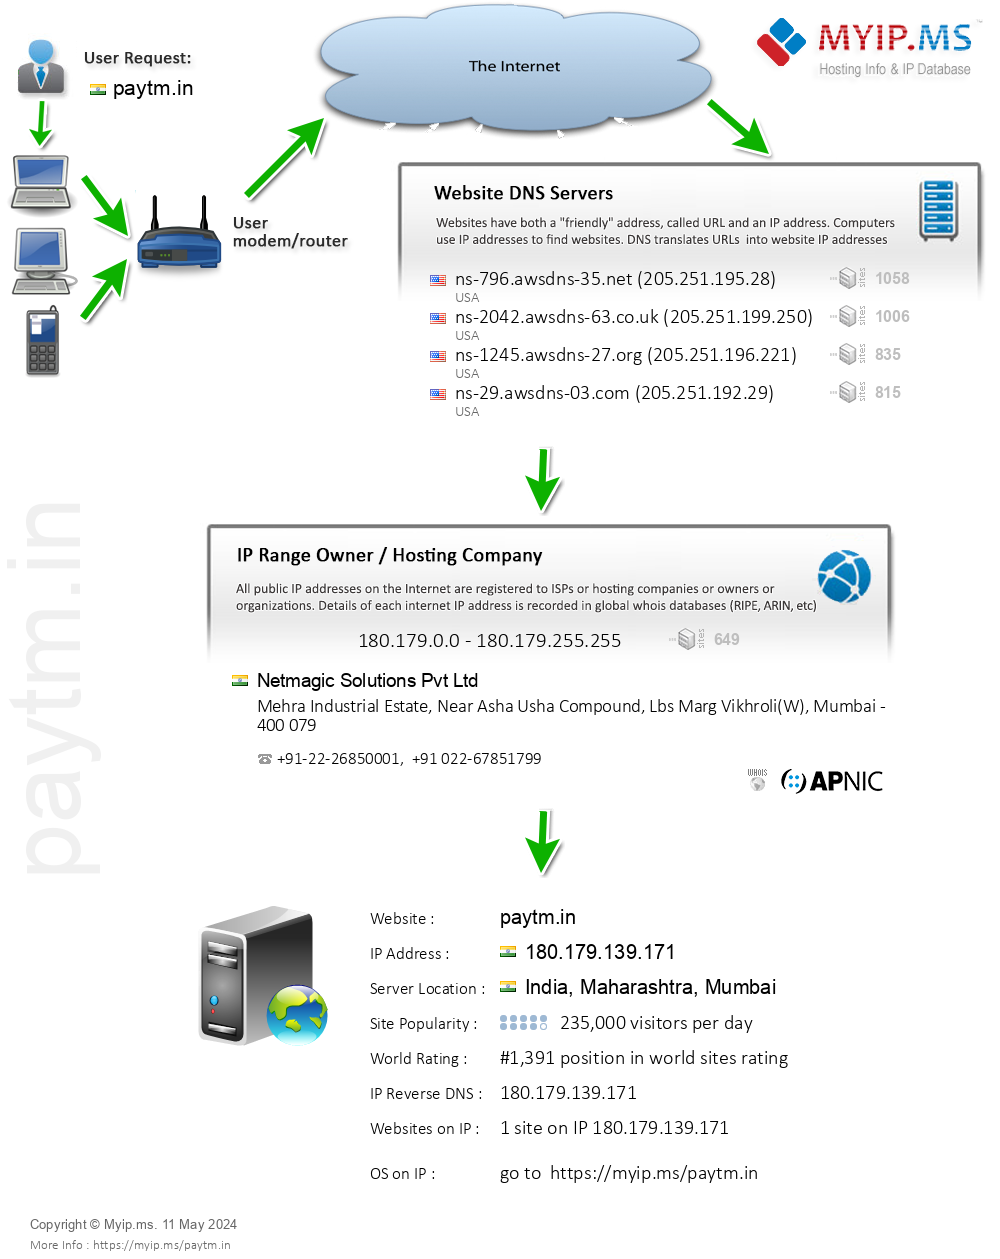 Paytm.in - Website Hosting Visual IP Diagram